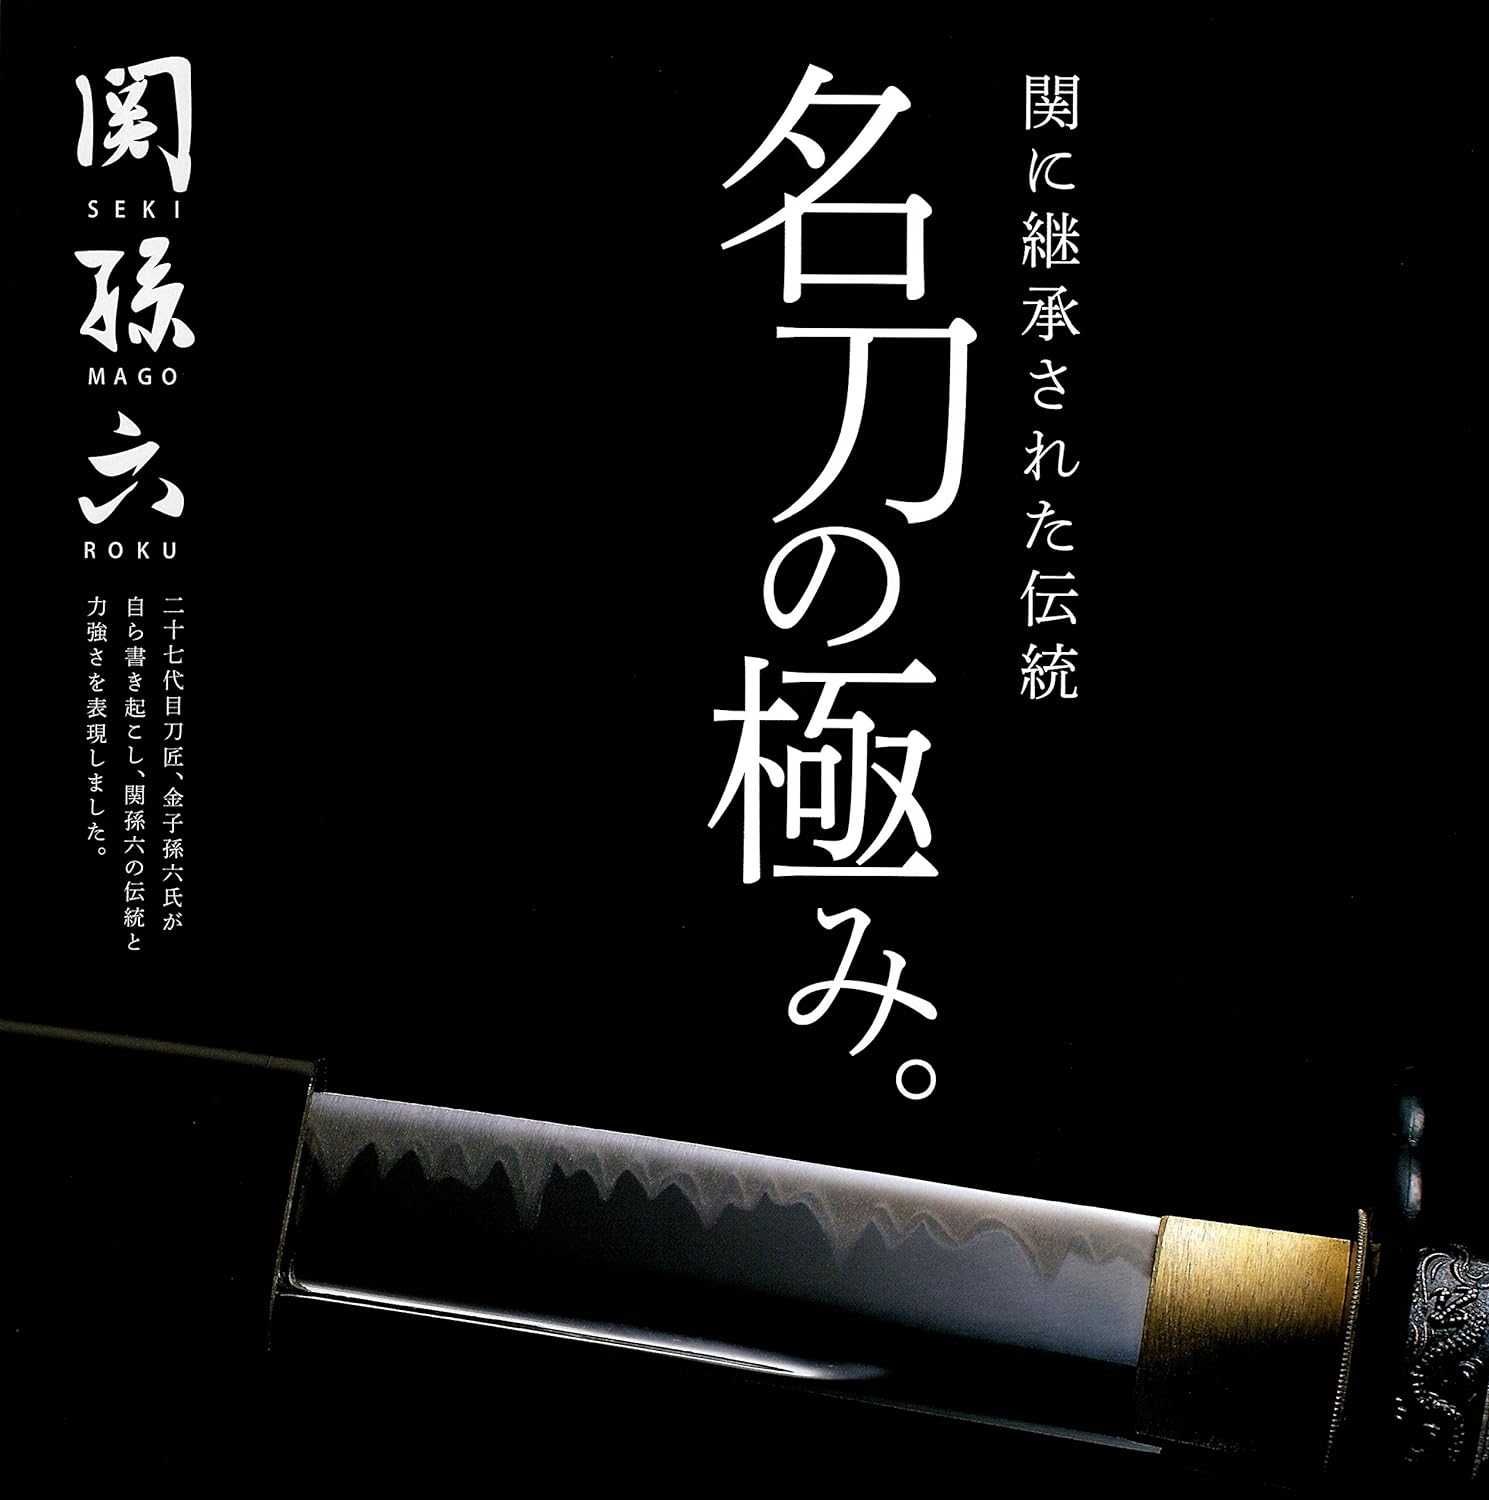 Японський універсальний ніж Santoku 170mm